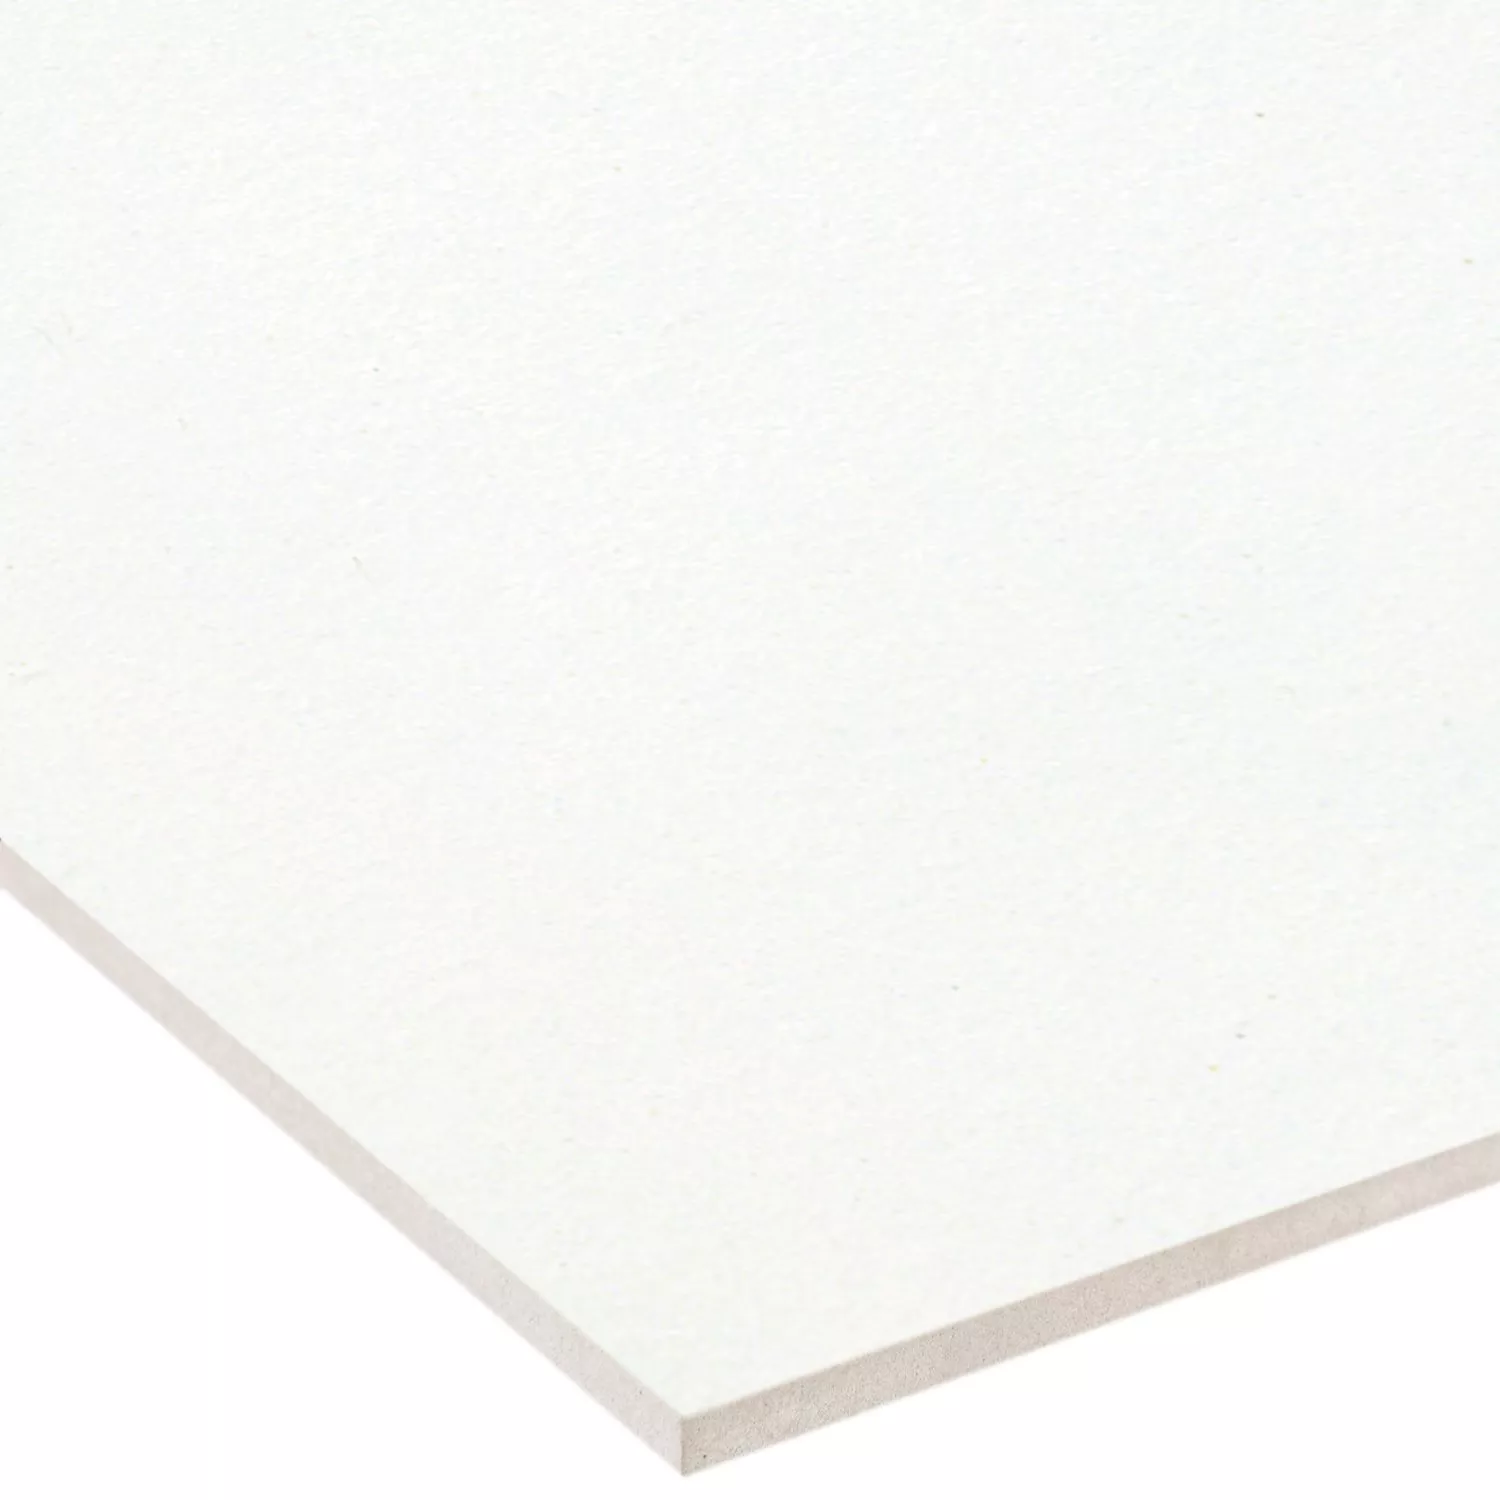 Sample Floor Tiles Adventure White Mat 30x30cm